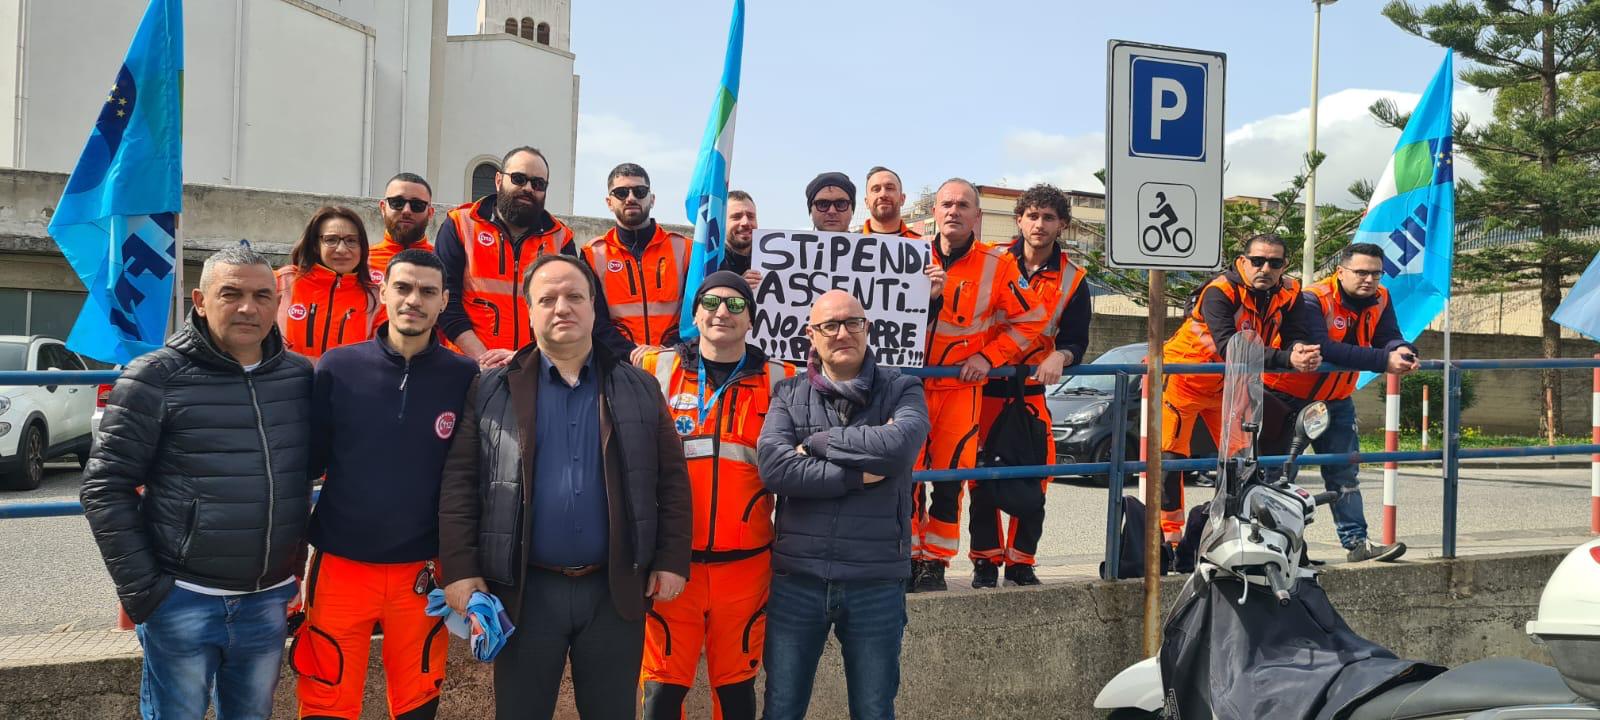 Policlinico, i lavoratori della Italy Emergenza incrociano le braccia: “Chiediamo maggiori tutele”